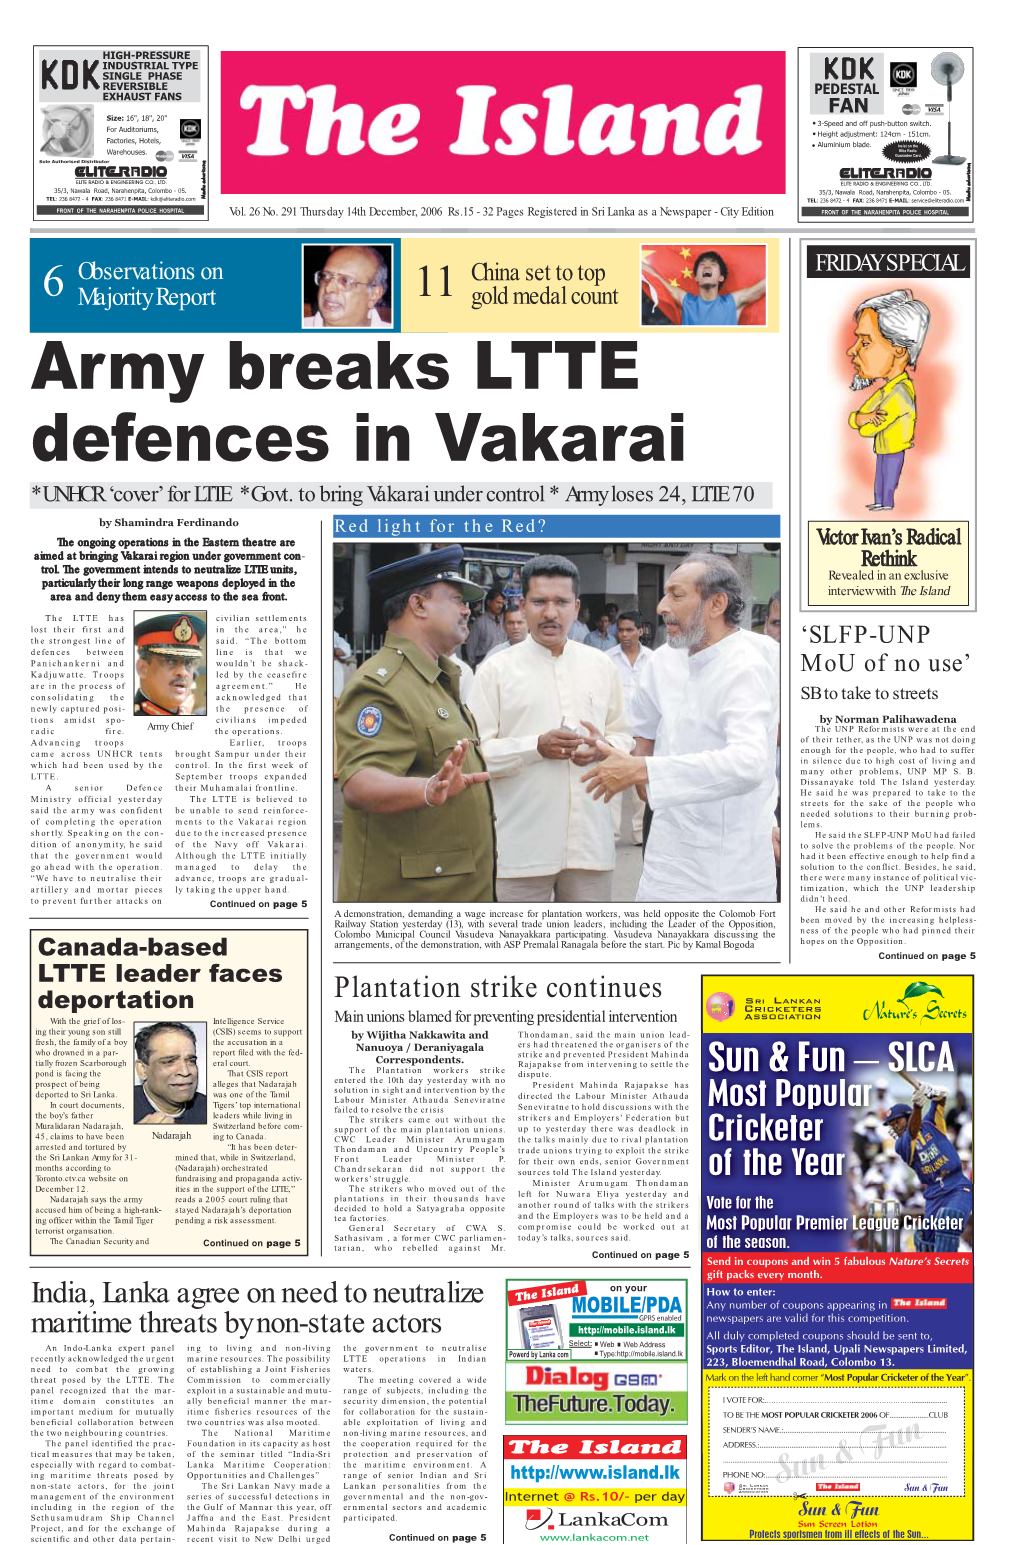 Army Breaks LTTE Defences in Vakarai *UNHCR ‘Cover’ for LTTE *Govt